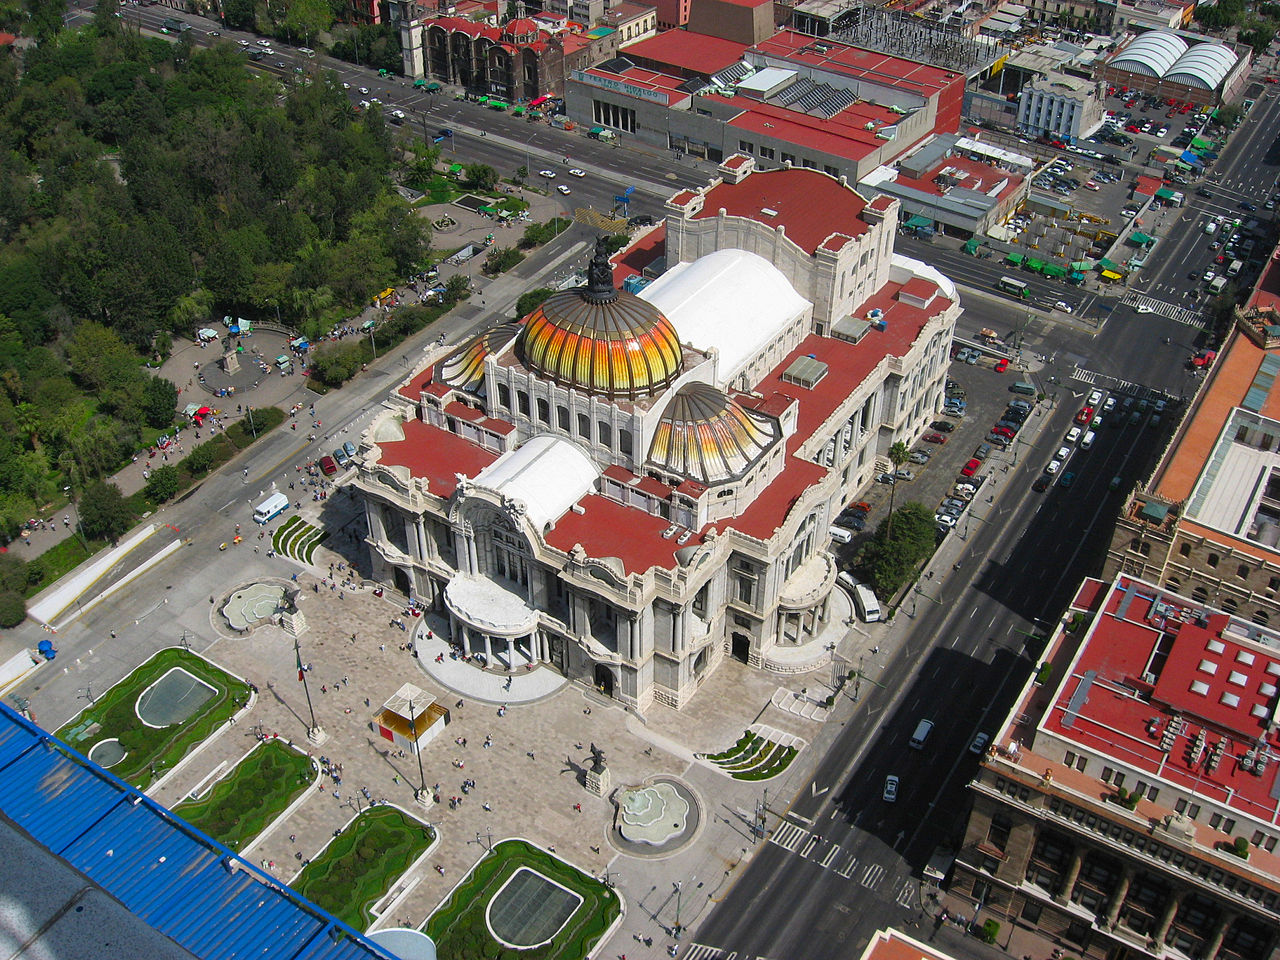 1280px-Mexico_City_Palacio_de_bellas_artes